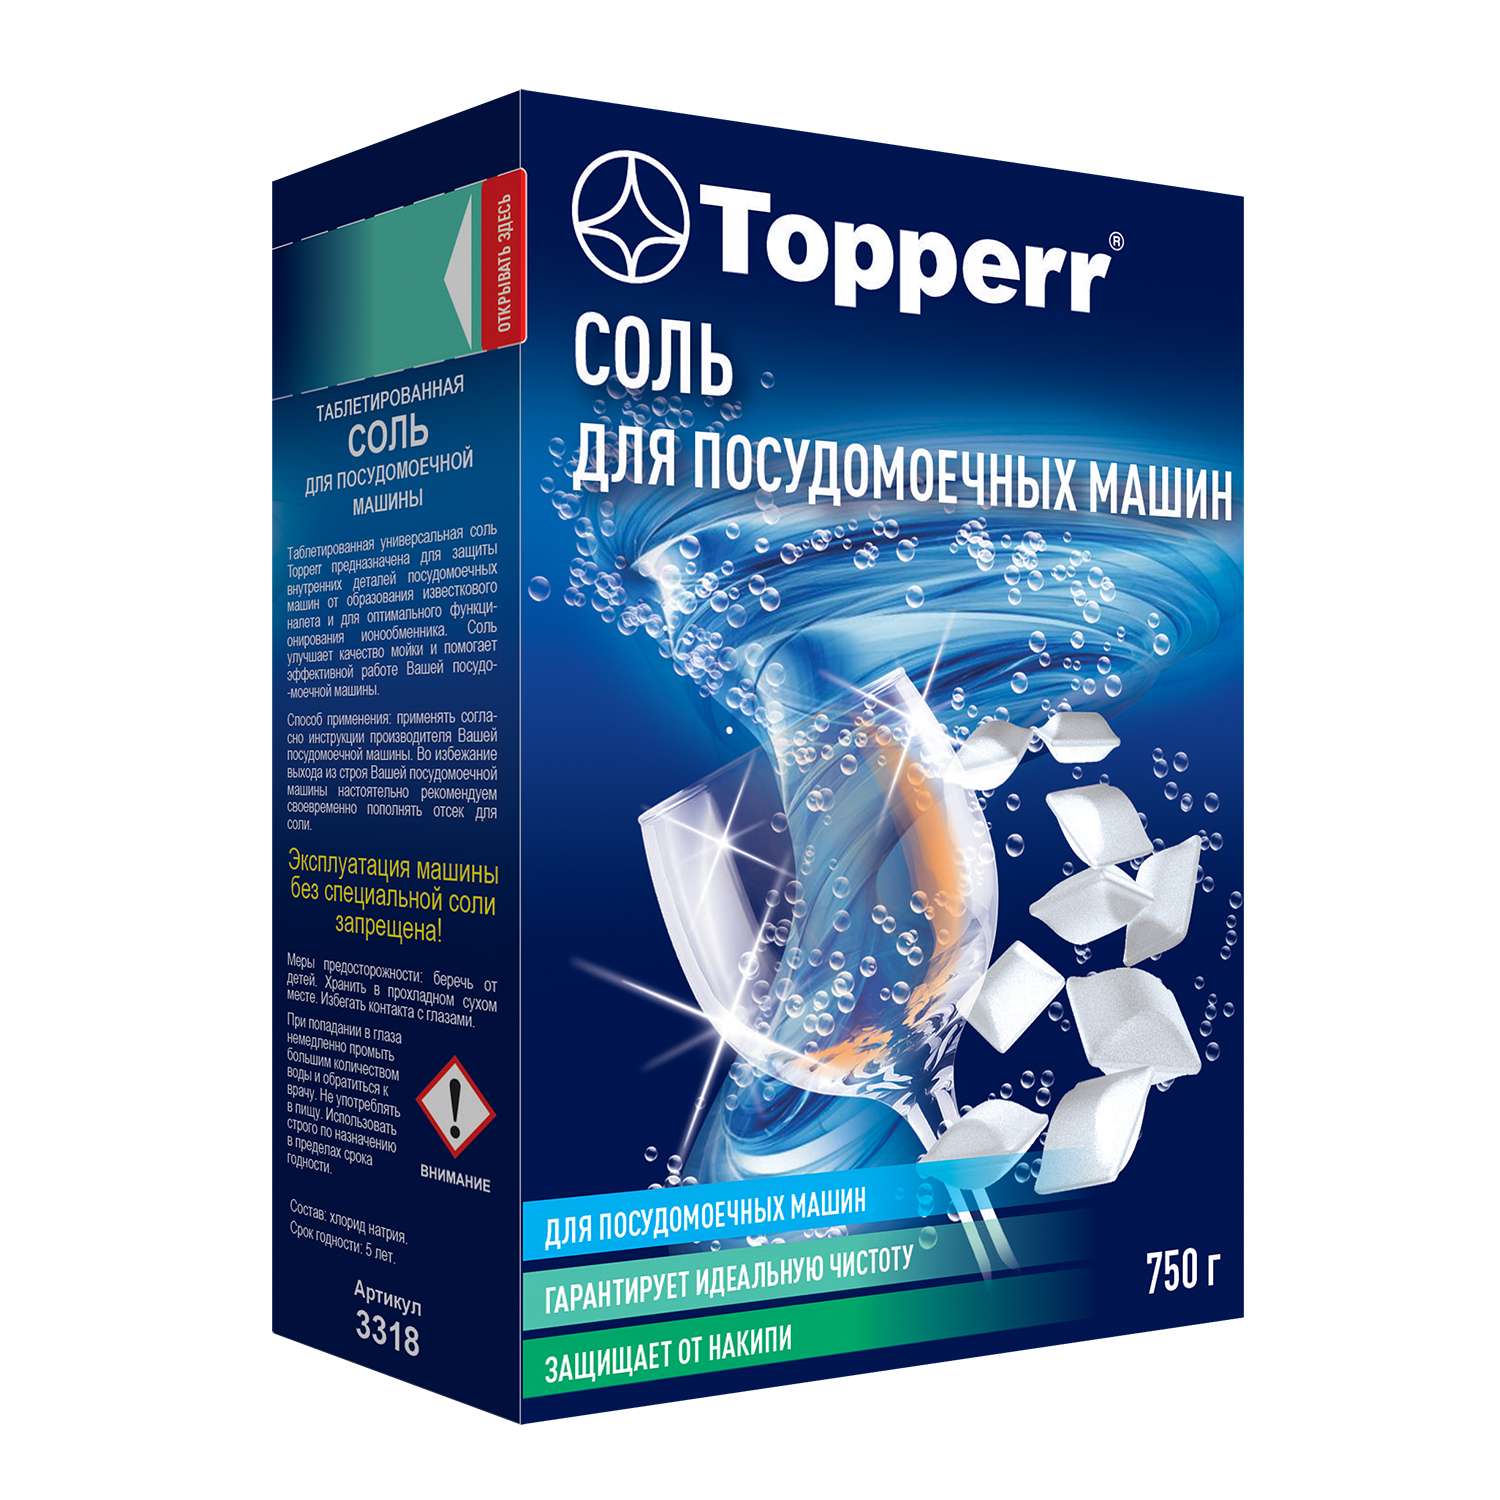 Соль TOPPERR таблетированная для посудомоечных машин 750г 3318 - фото 1